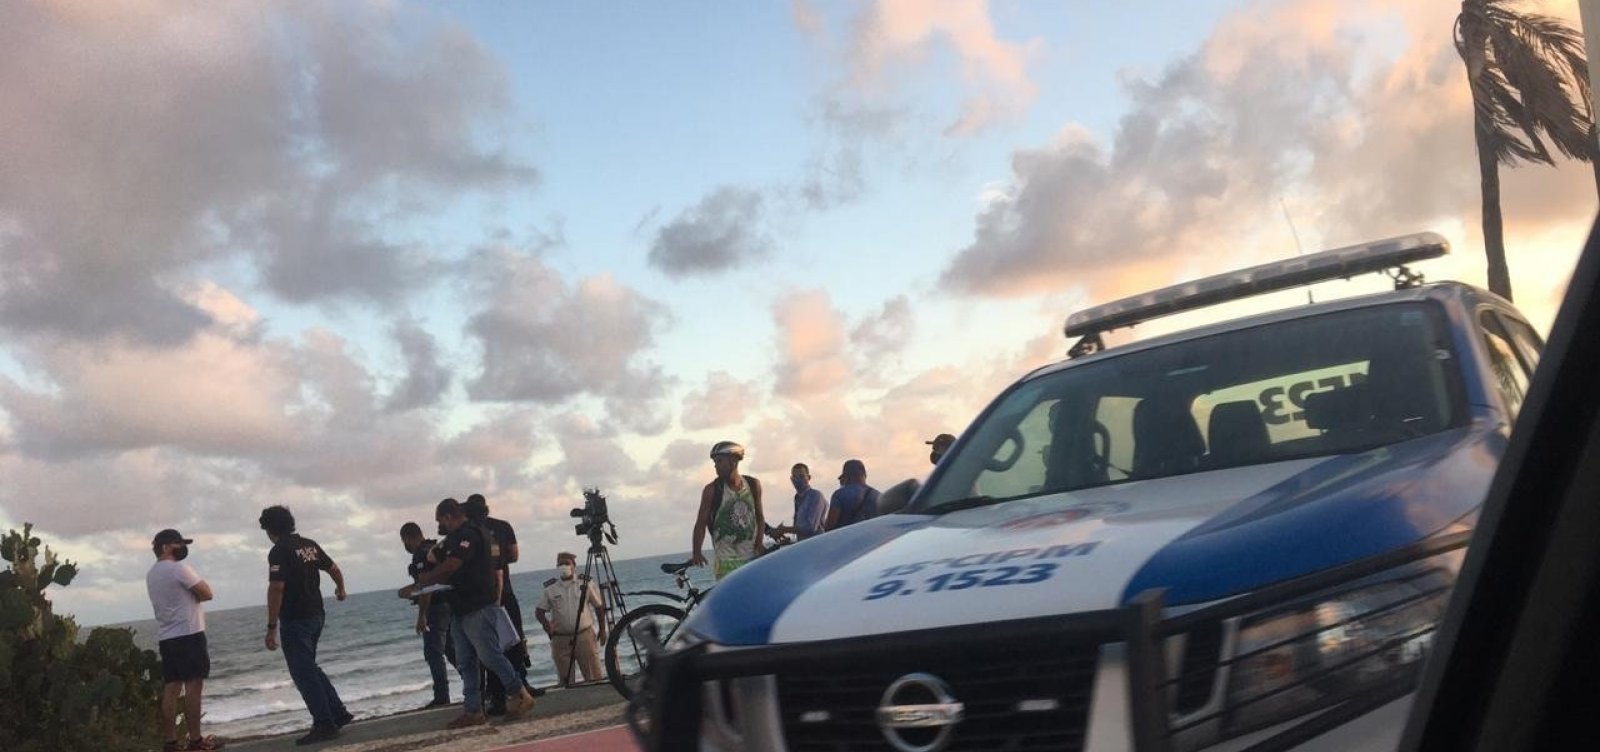 Três pessoas morrem durante tiroteio em praia de Jaguaribe